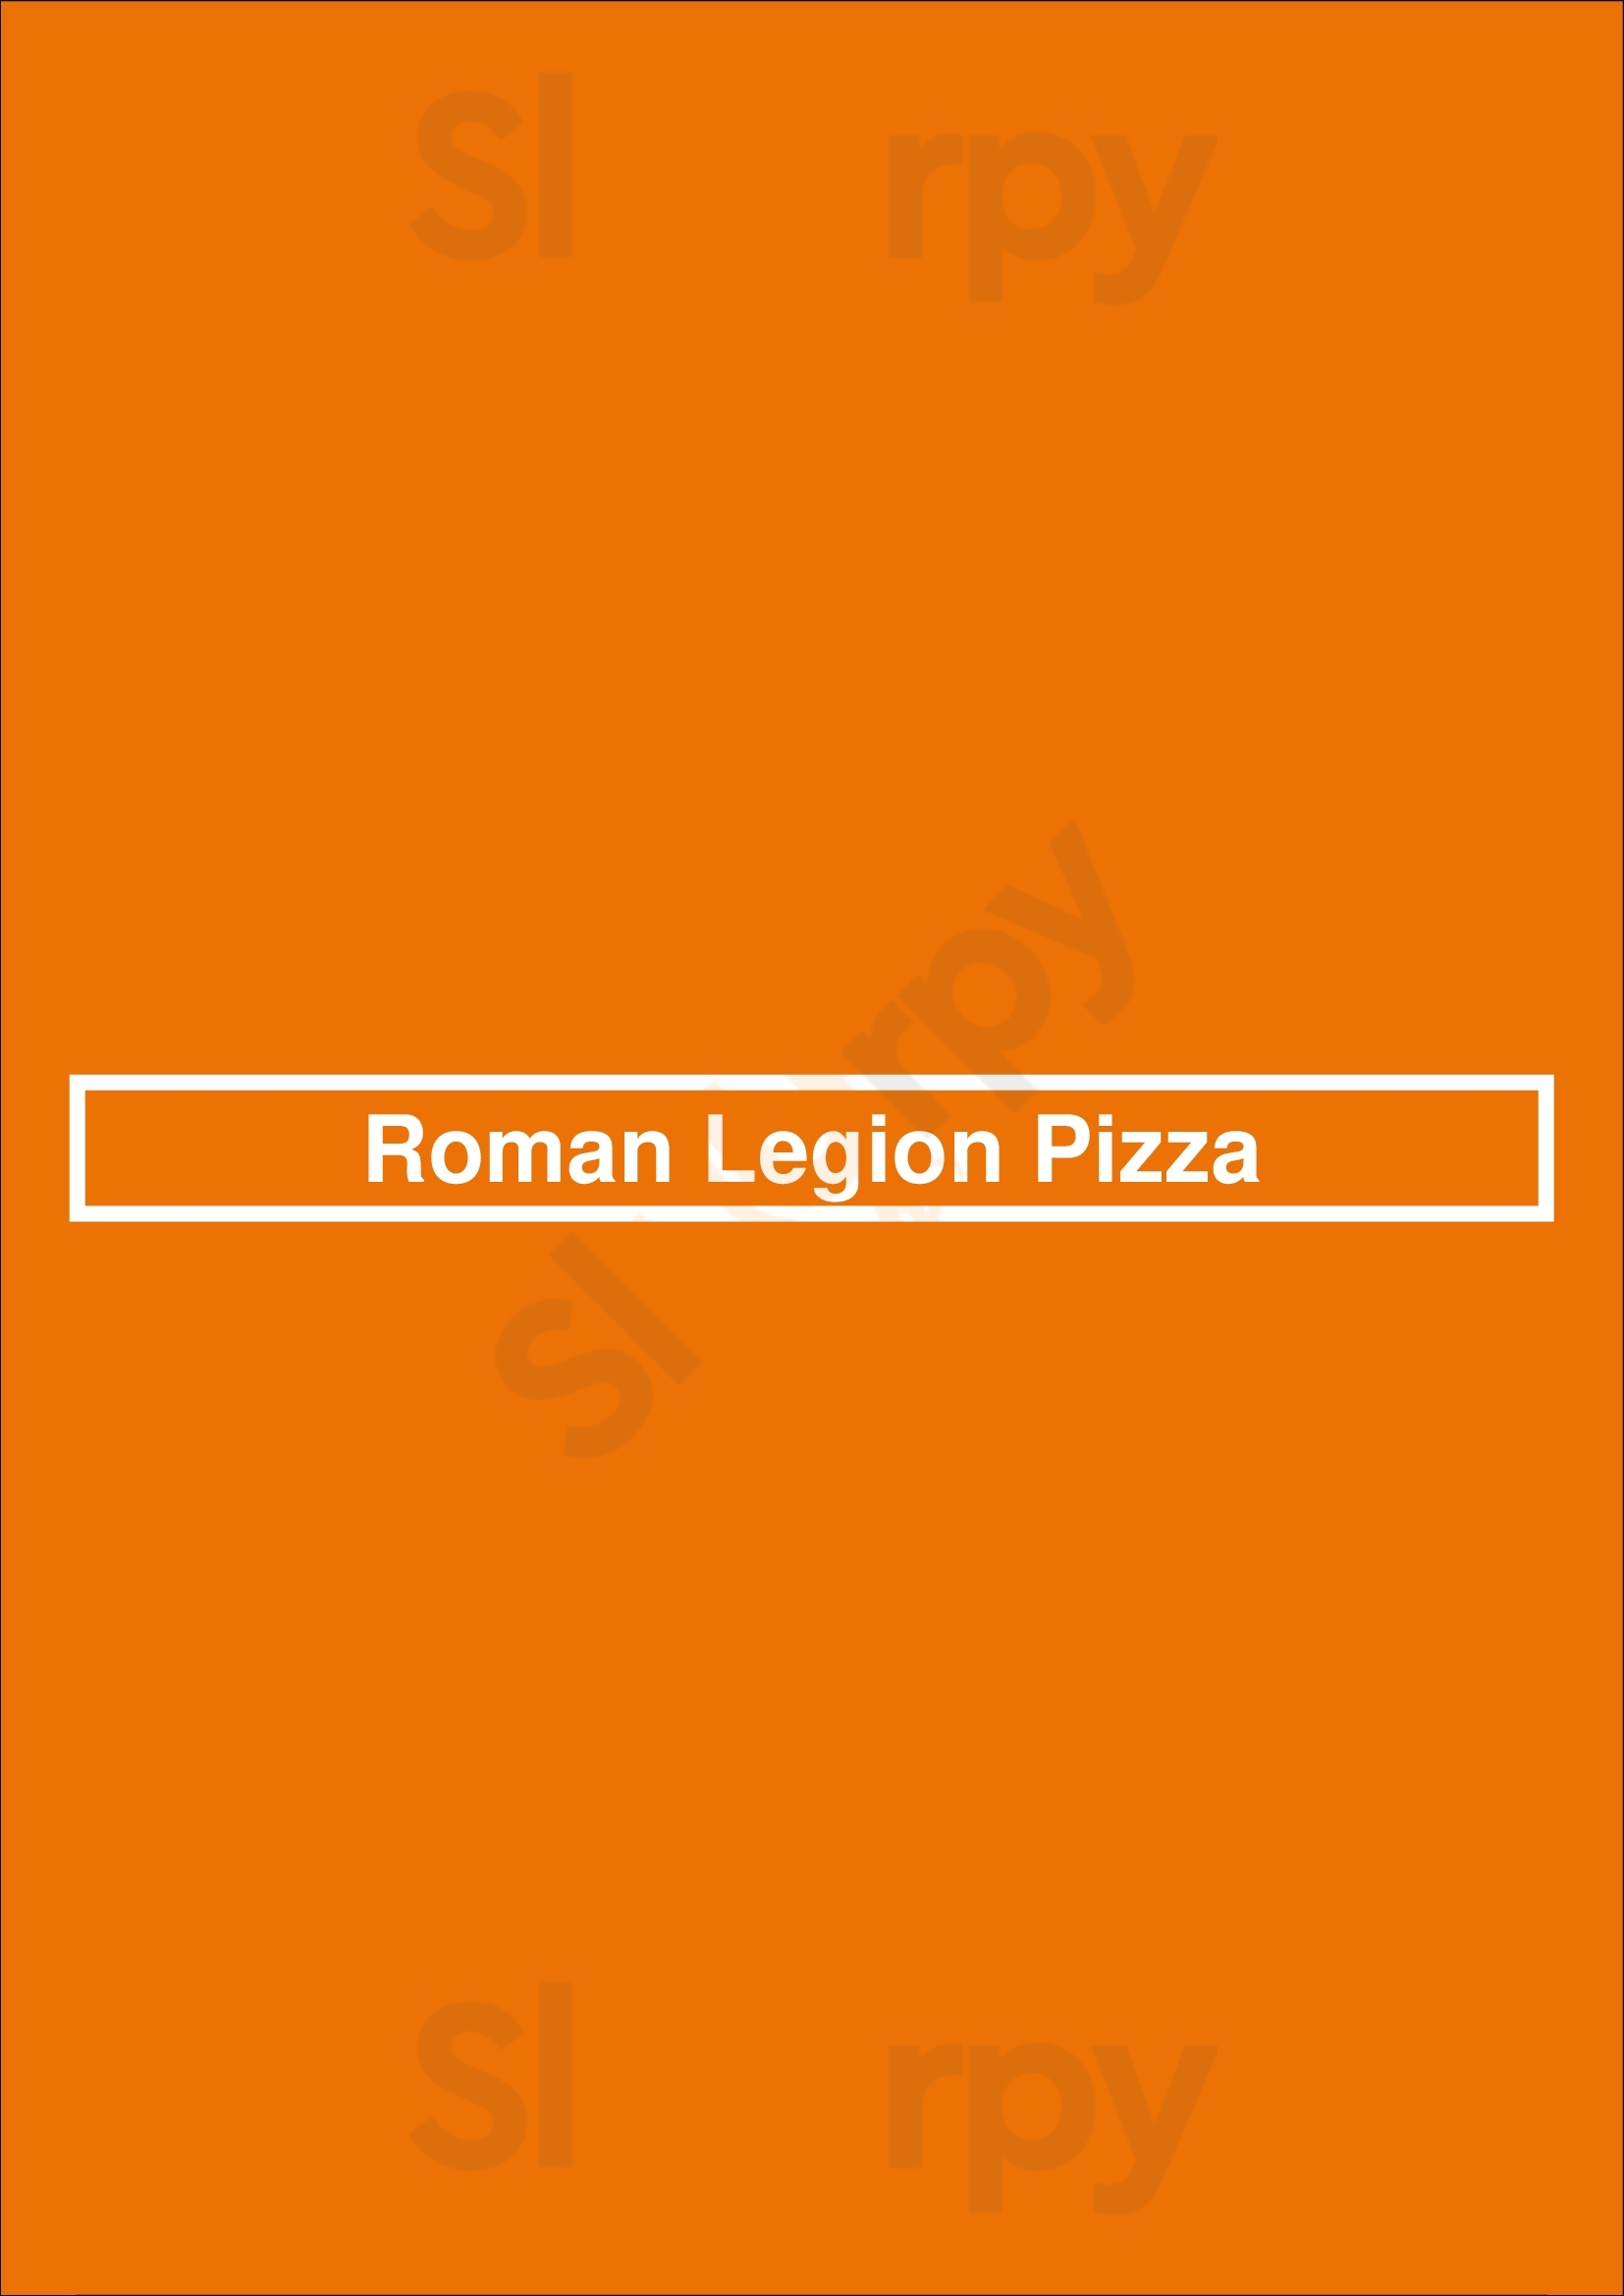 Roman Legion Pizza Lincoln Menu - 1